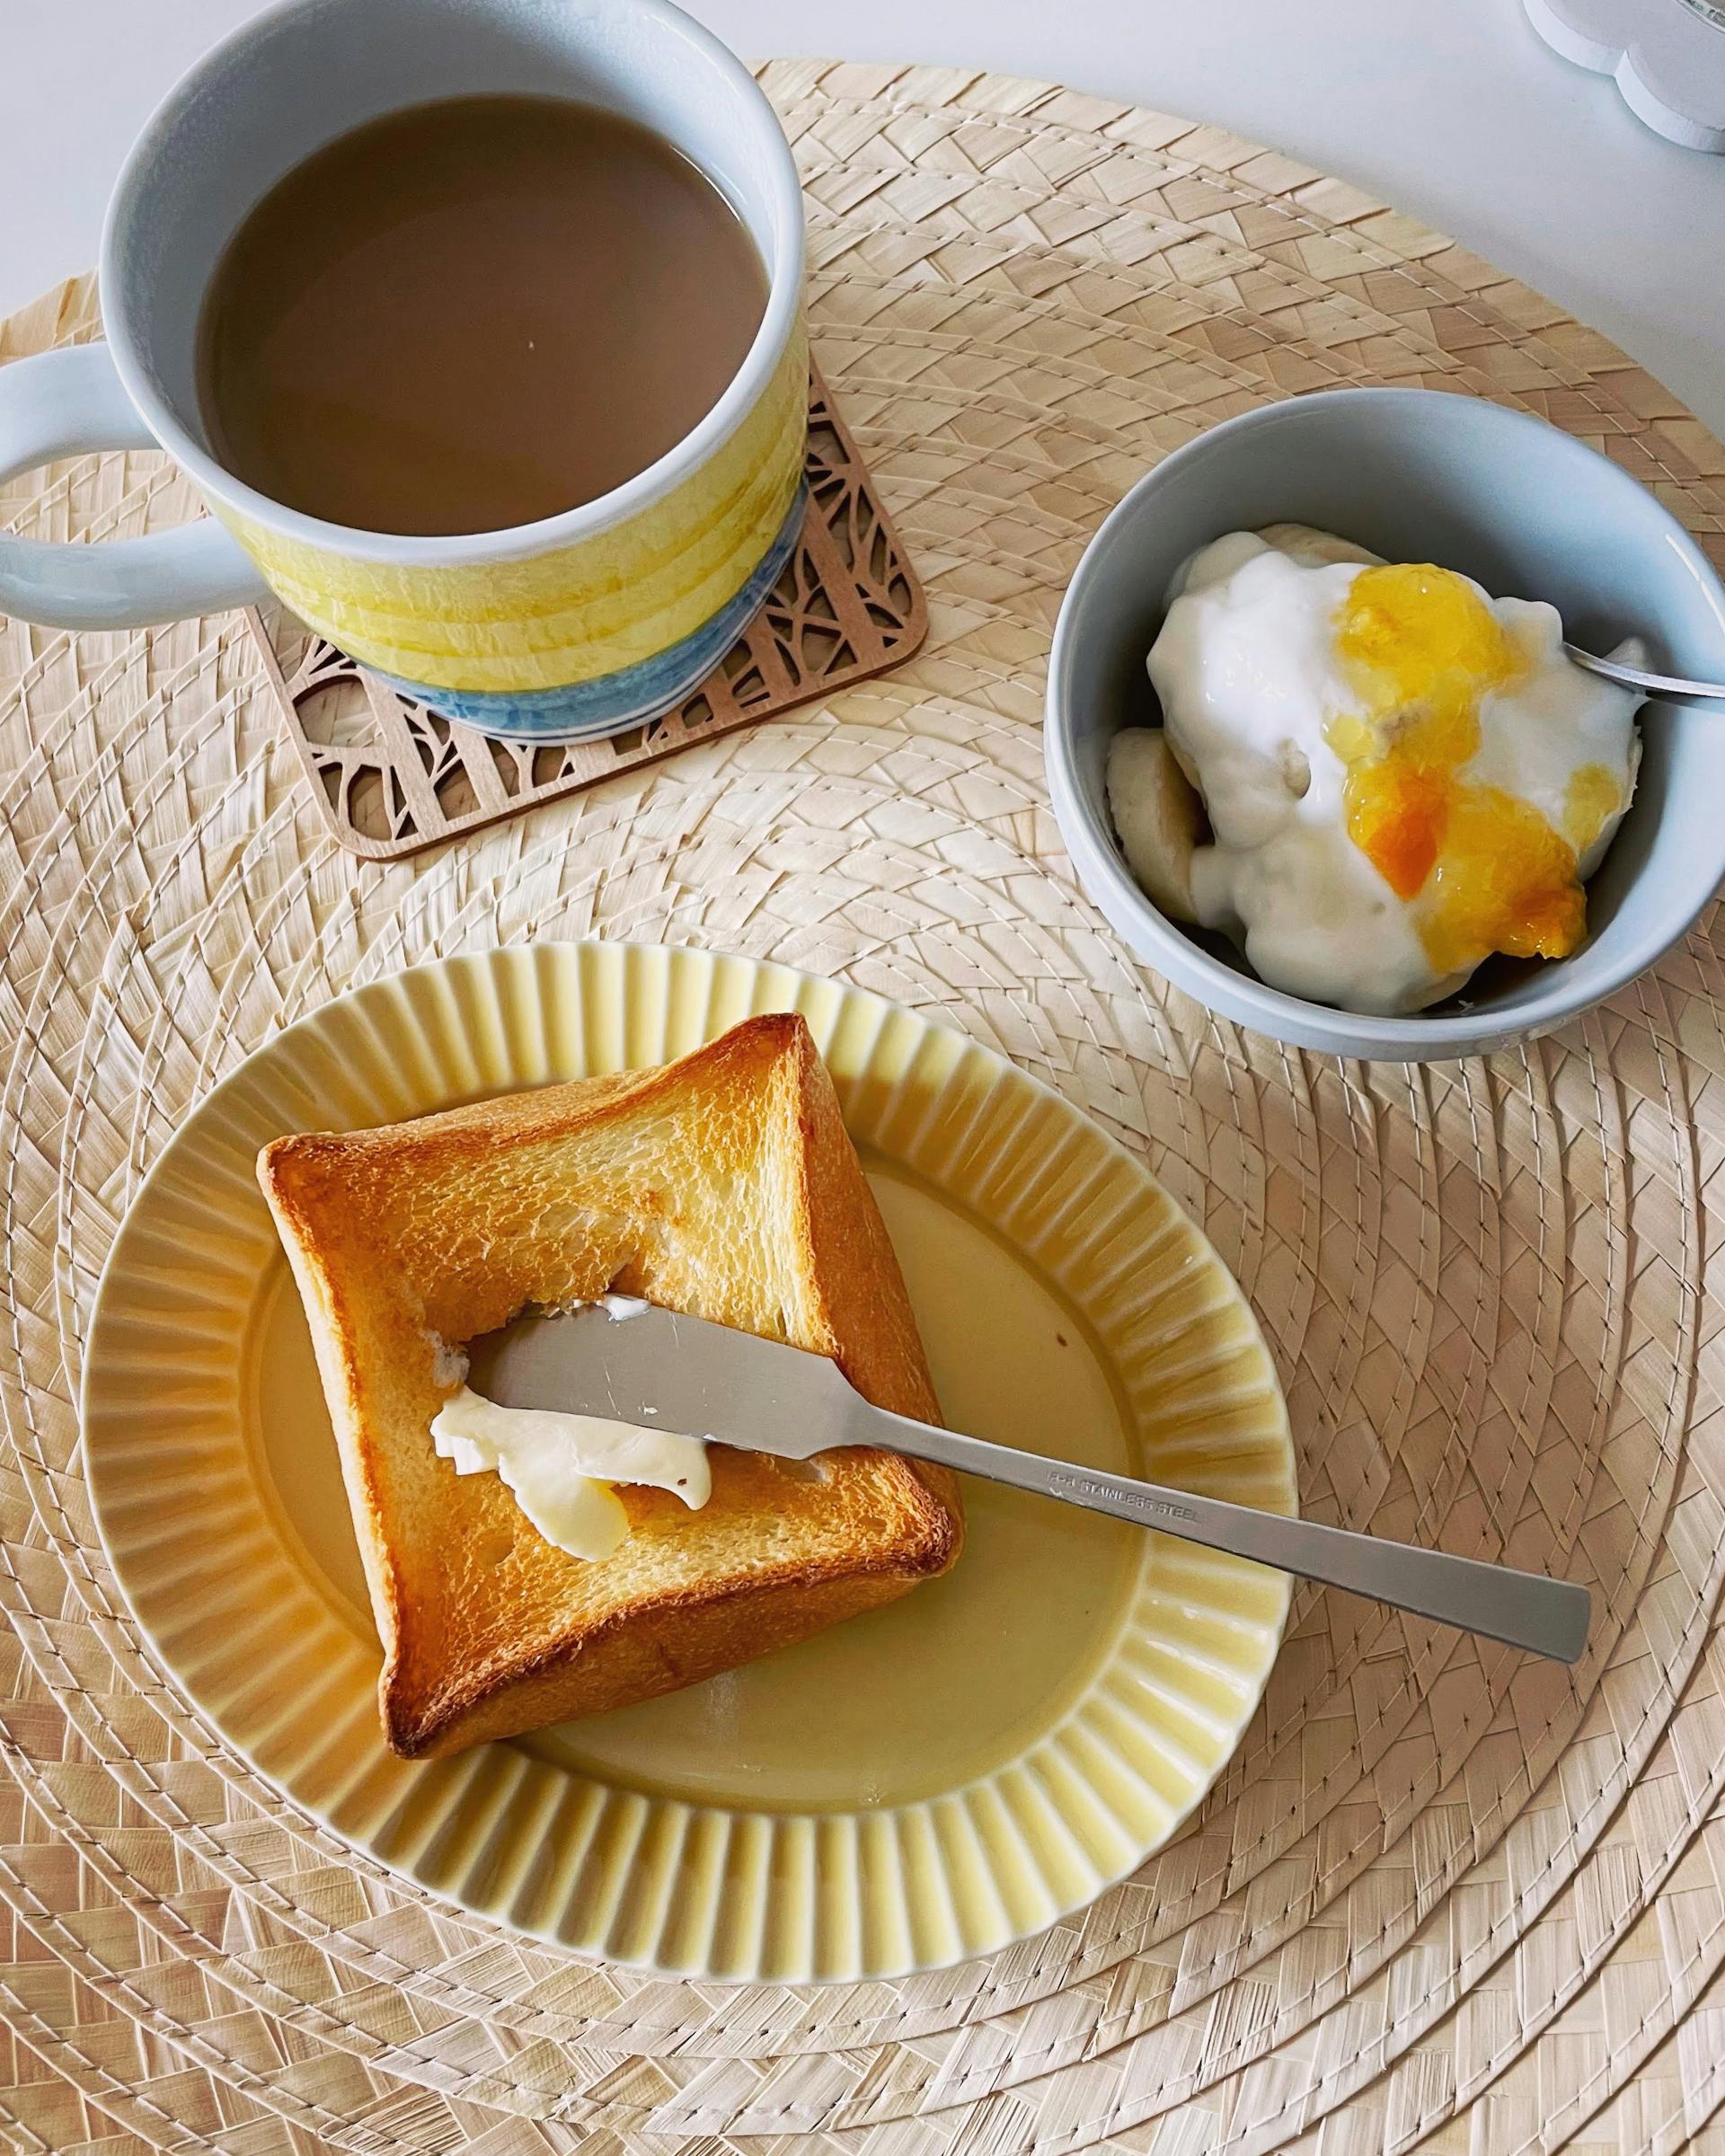 Gebutterter Toast, Kaffee und Müsli | Quelle: Pexels